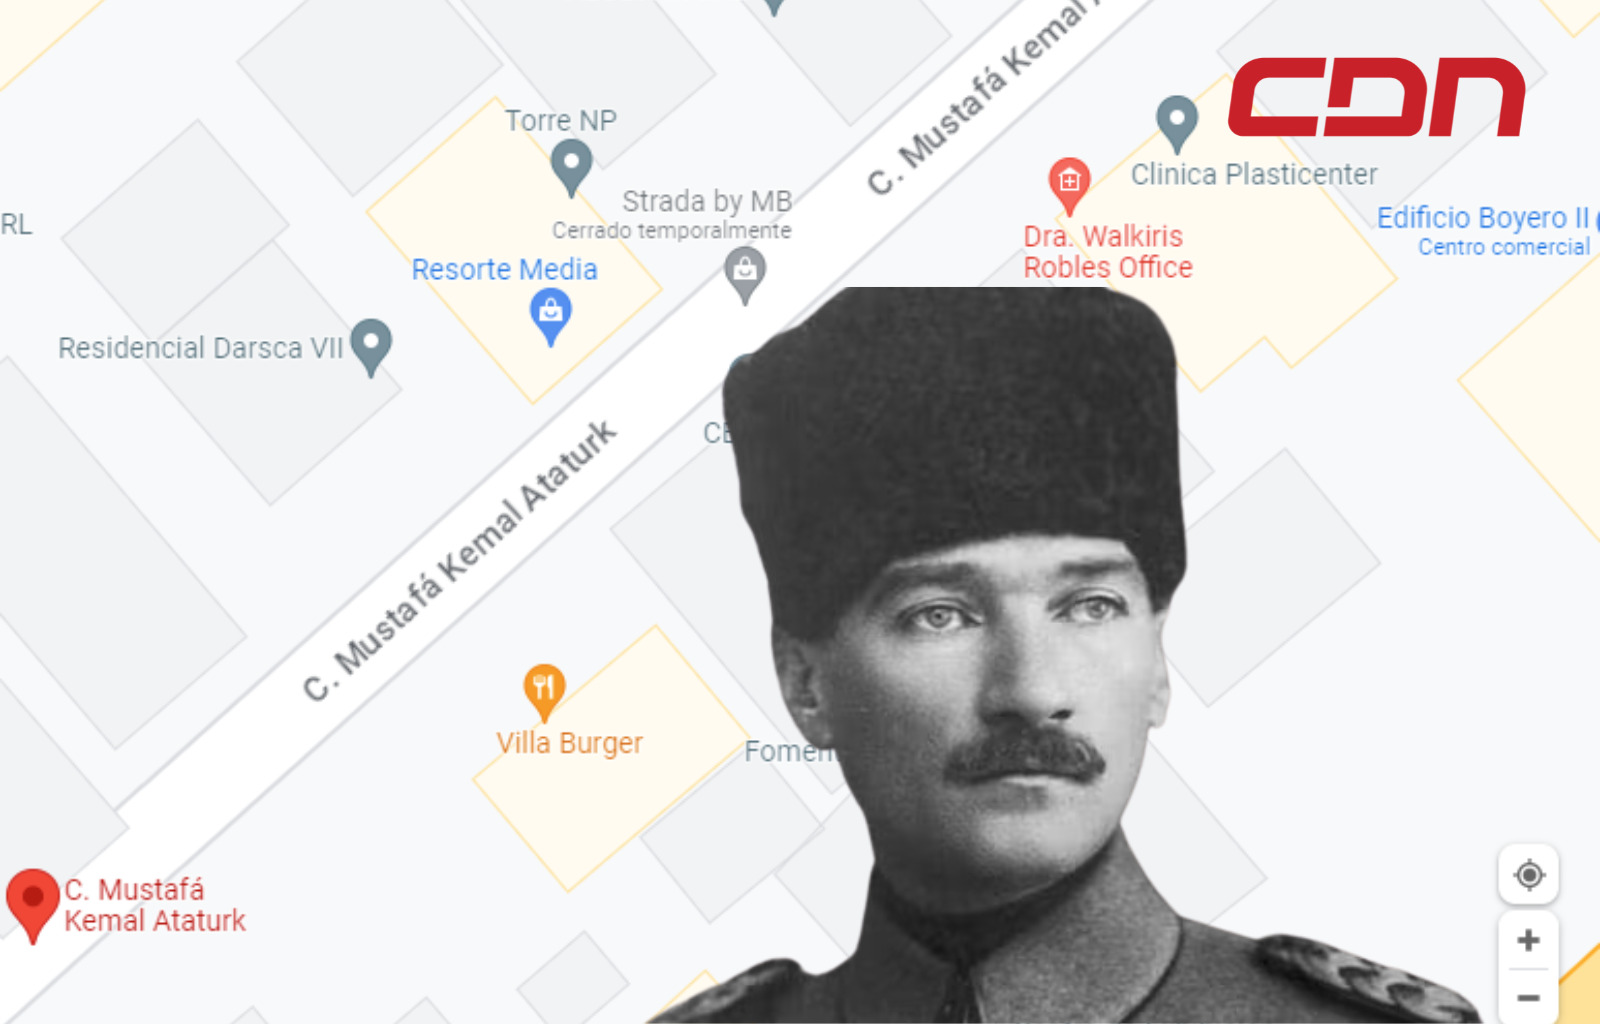 Nombres de calles dominicanas: ¿Quién fue Mustafa Kemal Ataturk?